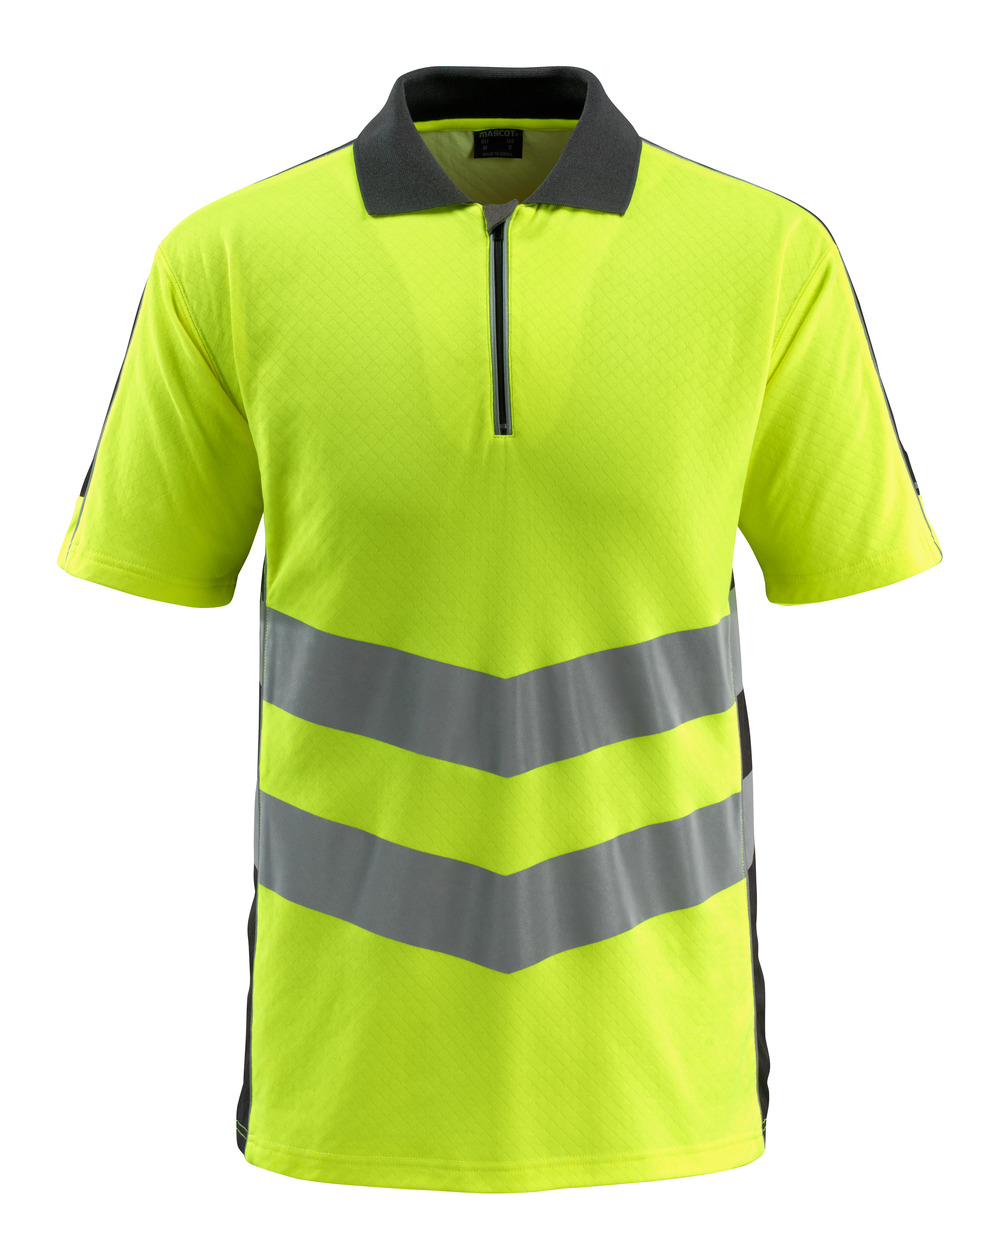 MASCOT-Warnschutz-Polo-Shirt, Murton, SAFE SUPREME, 170 g/m², gelb/schwarz